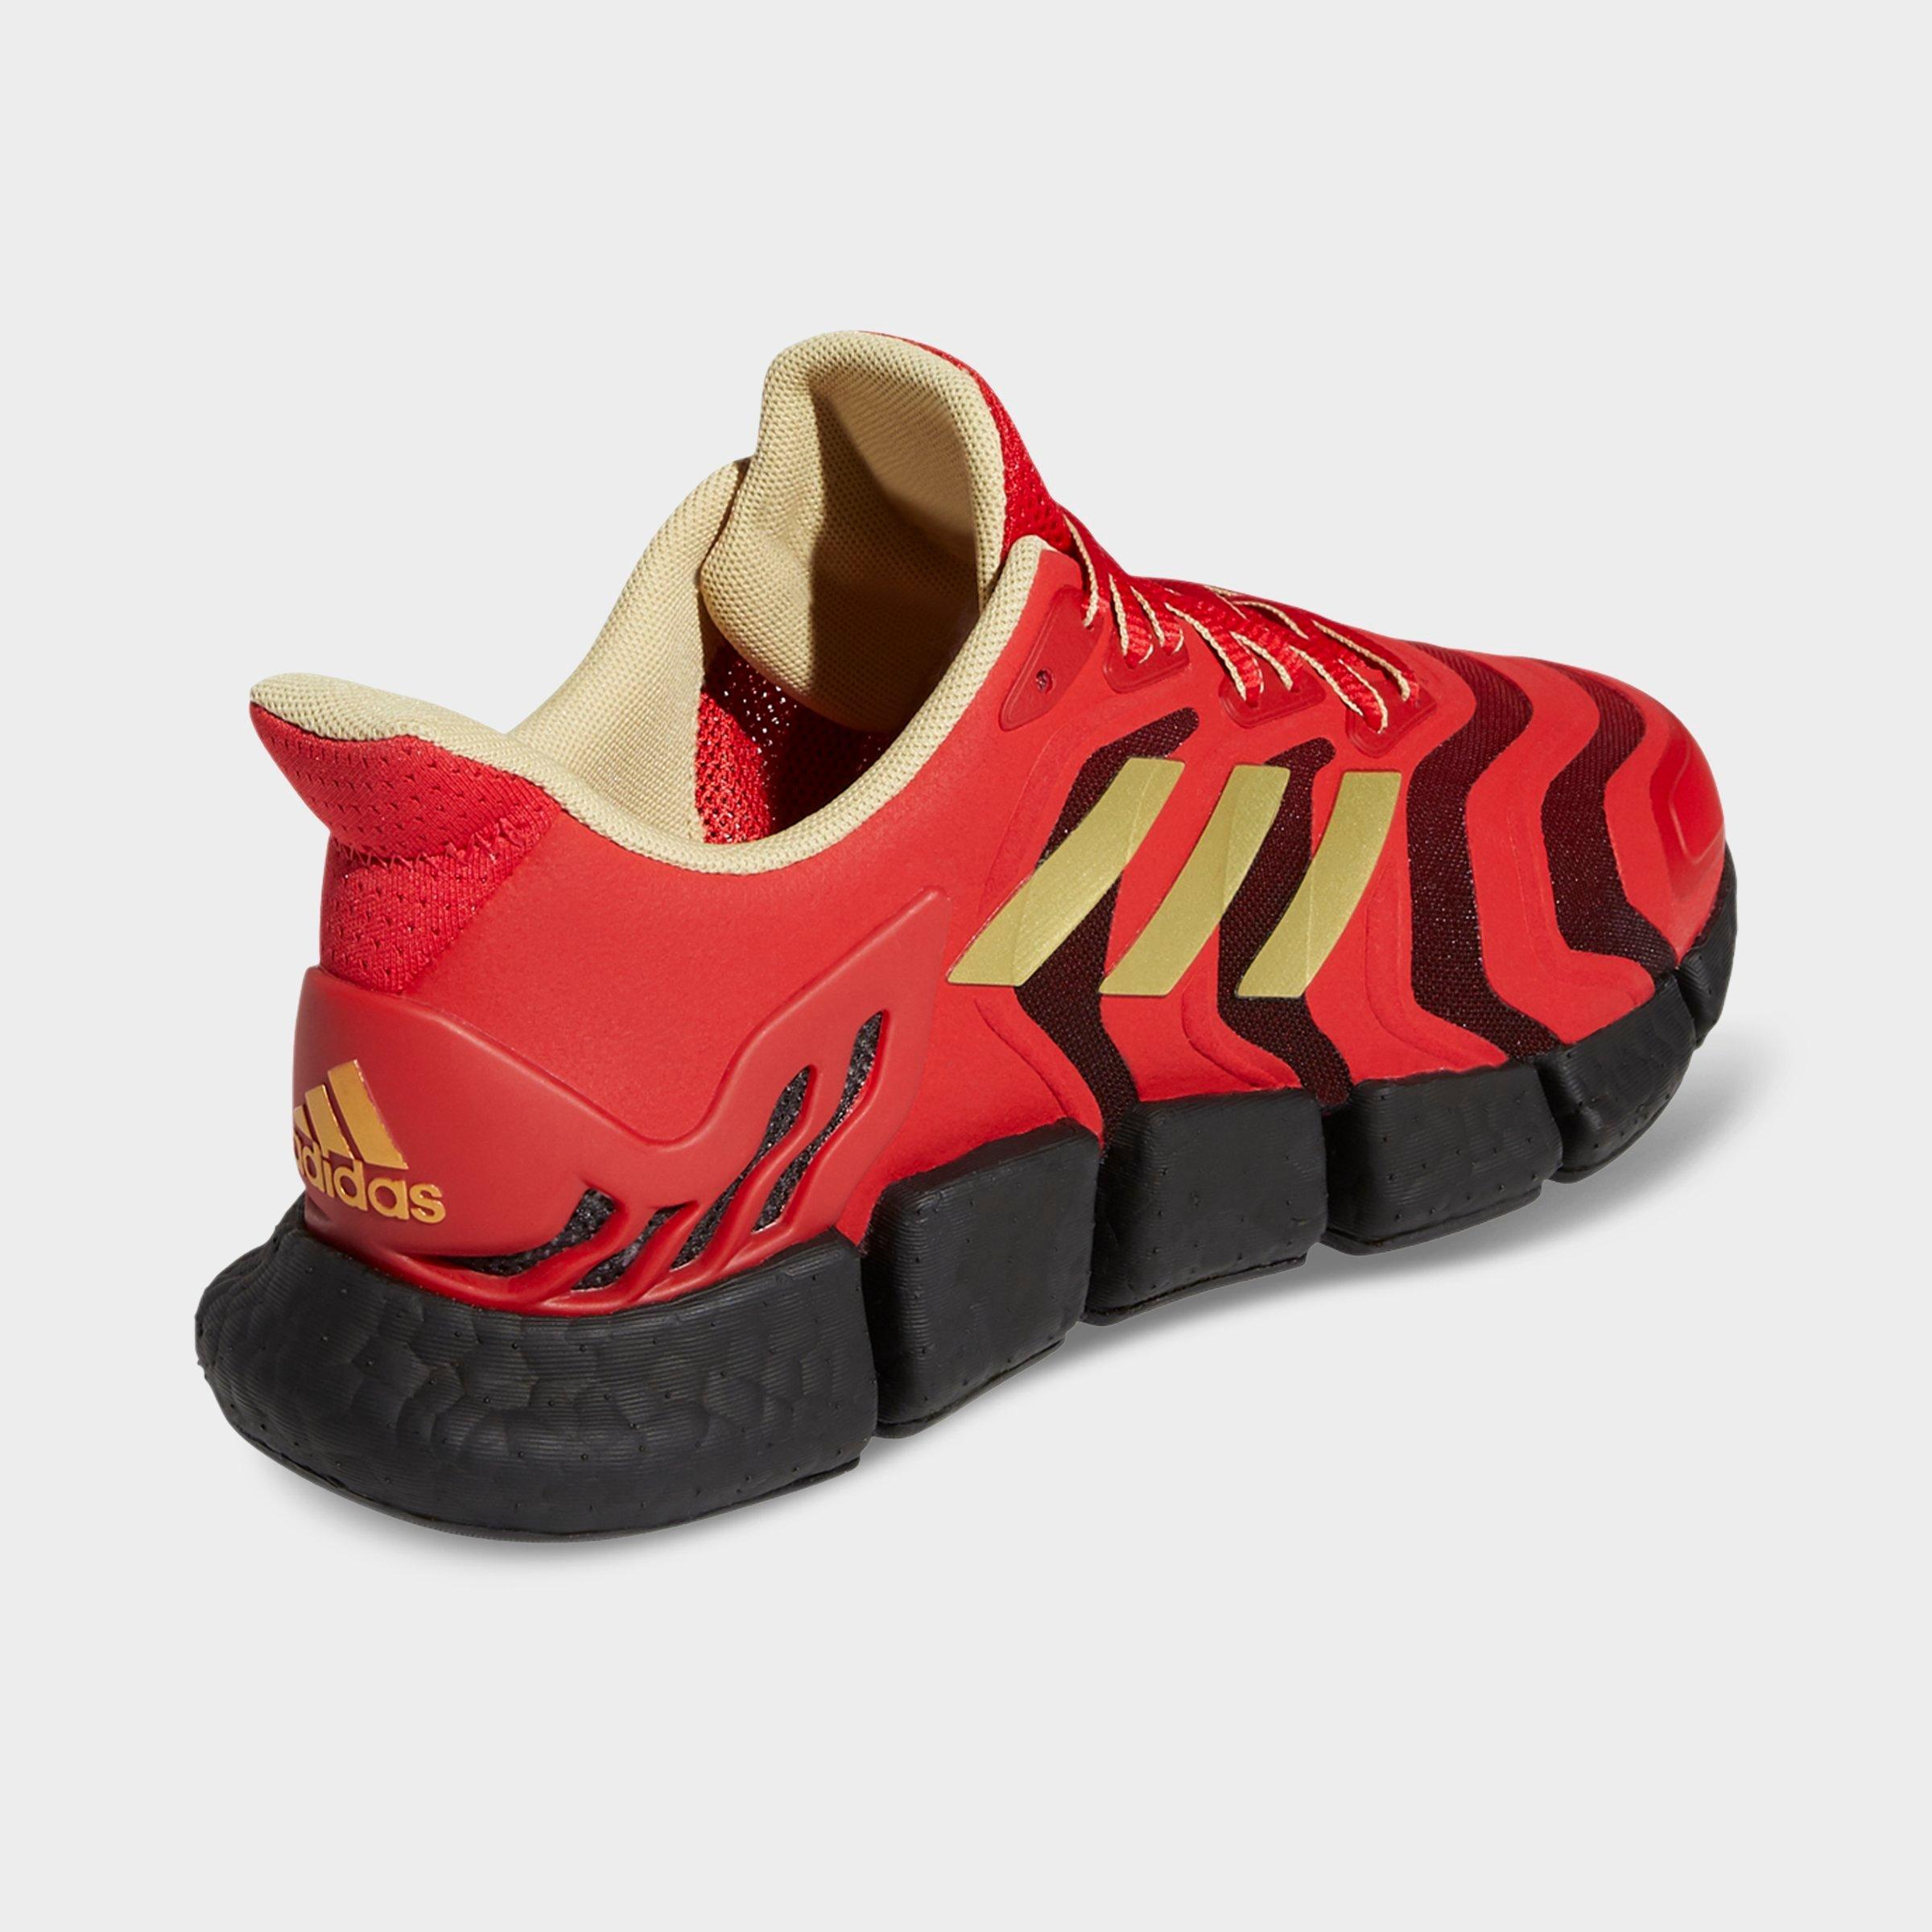 adidas climacool training shoes